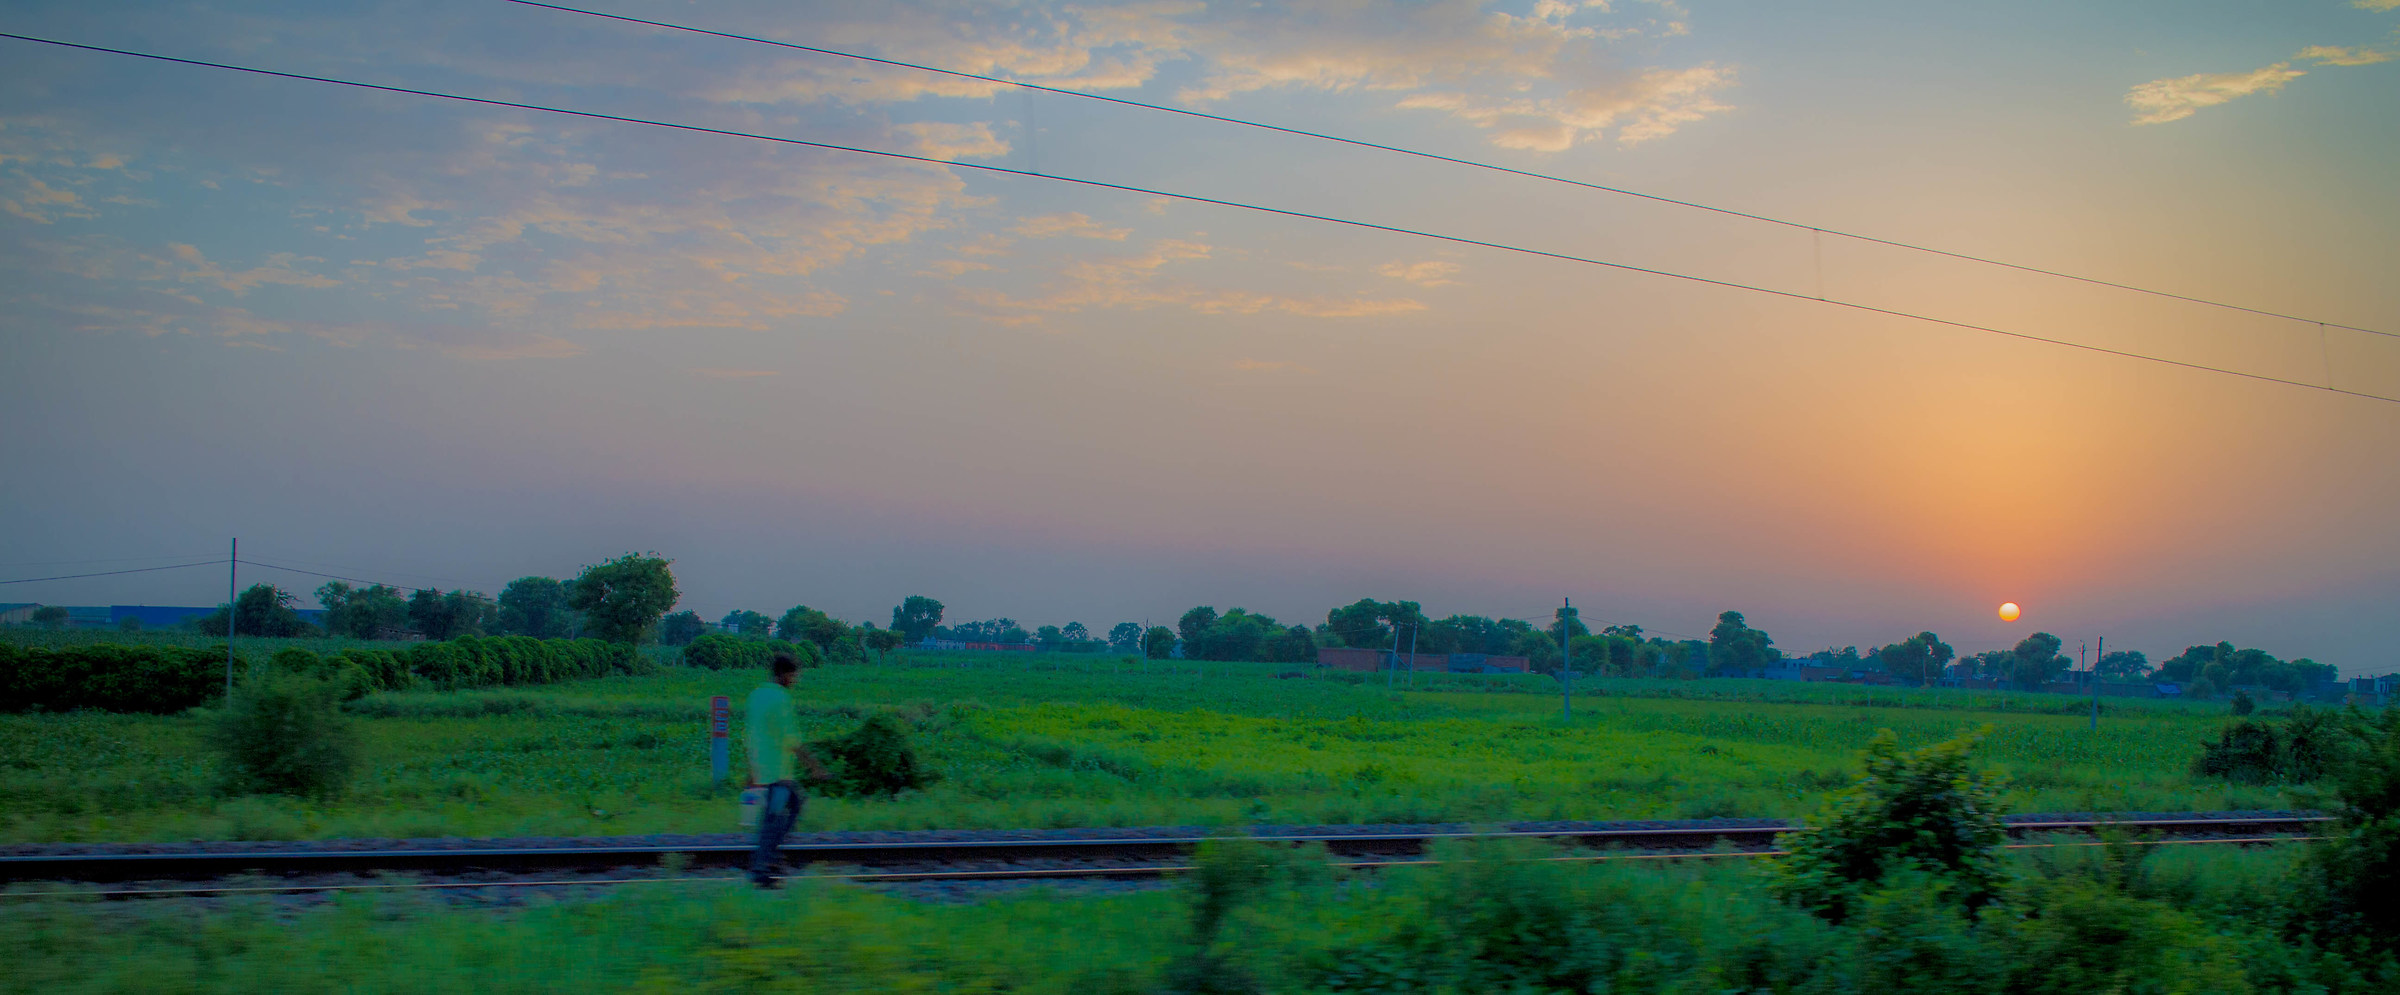 Sunset on a Railway...